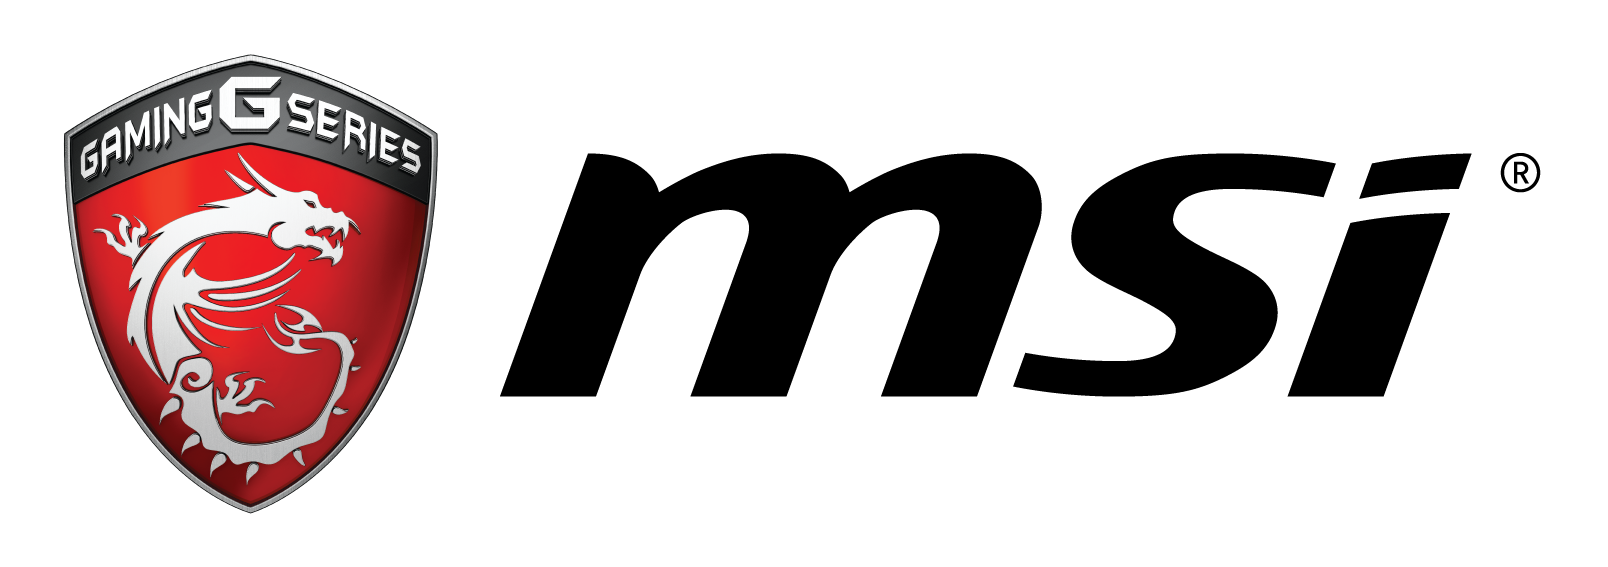 msi-gaming_logo-horizontal-4color (1)